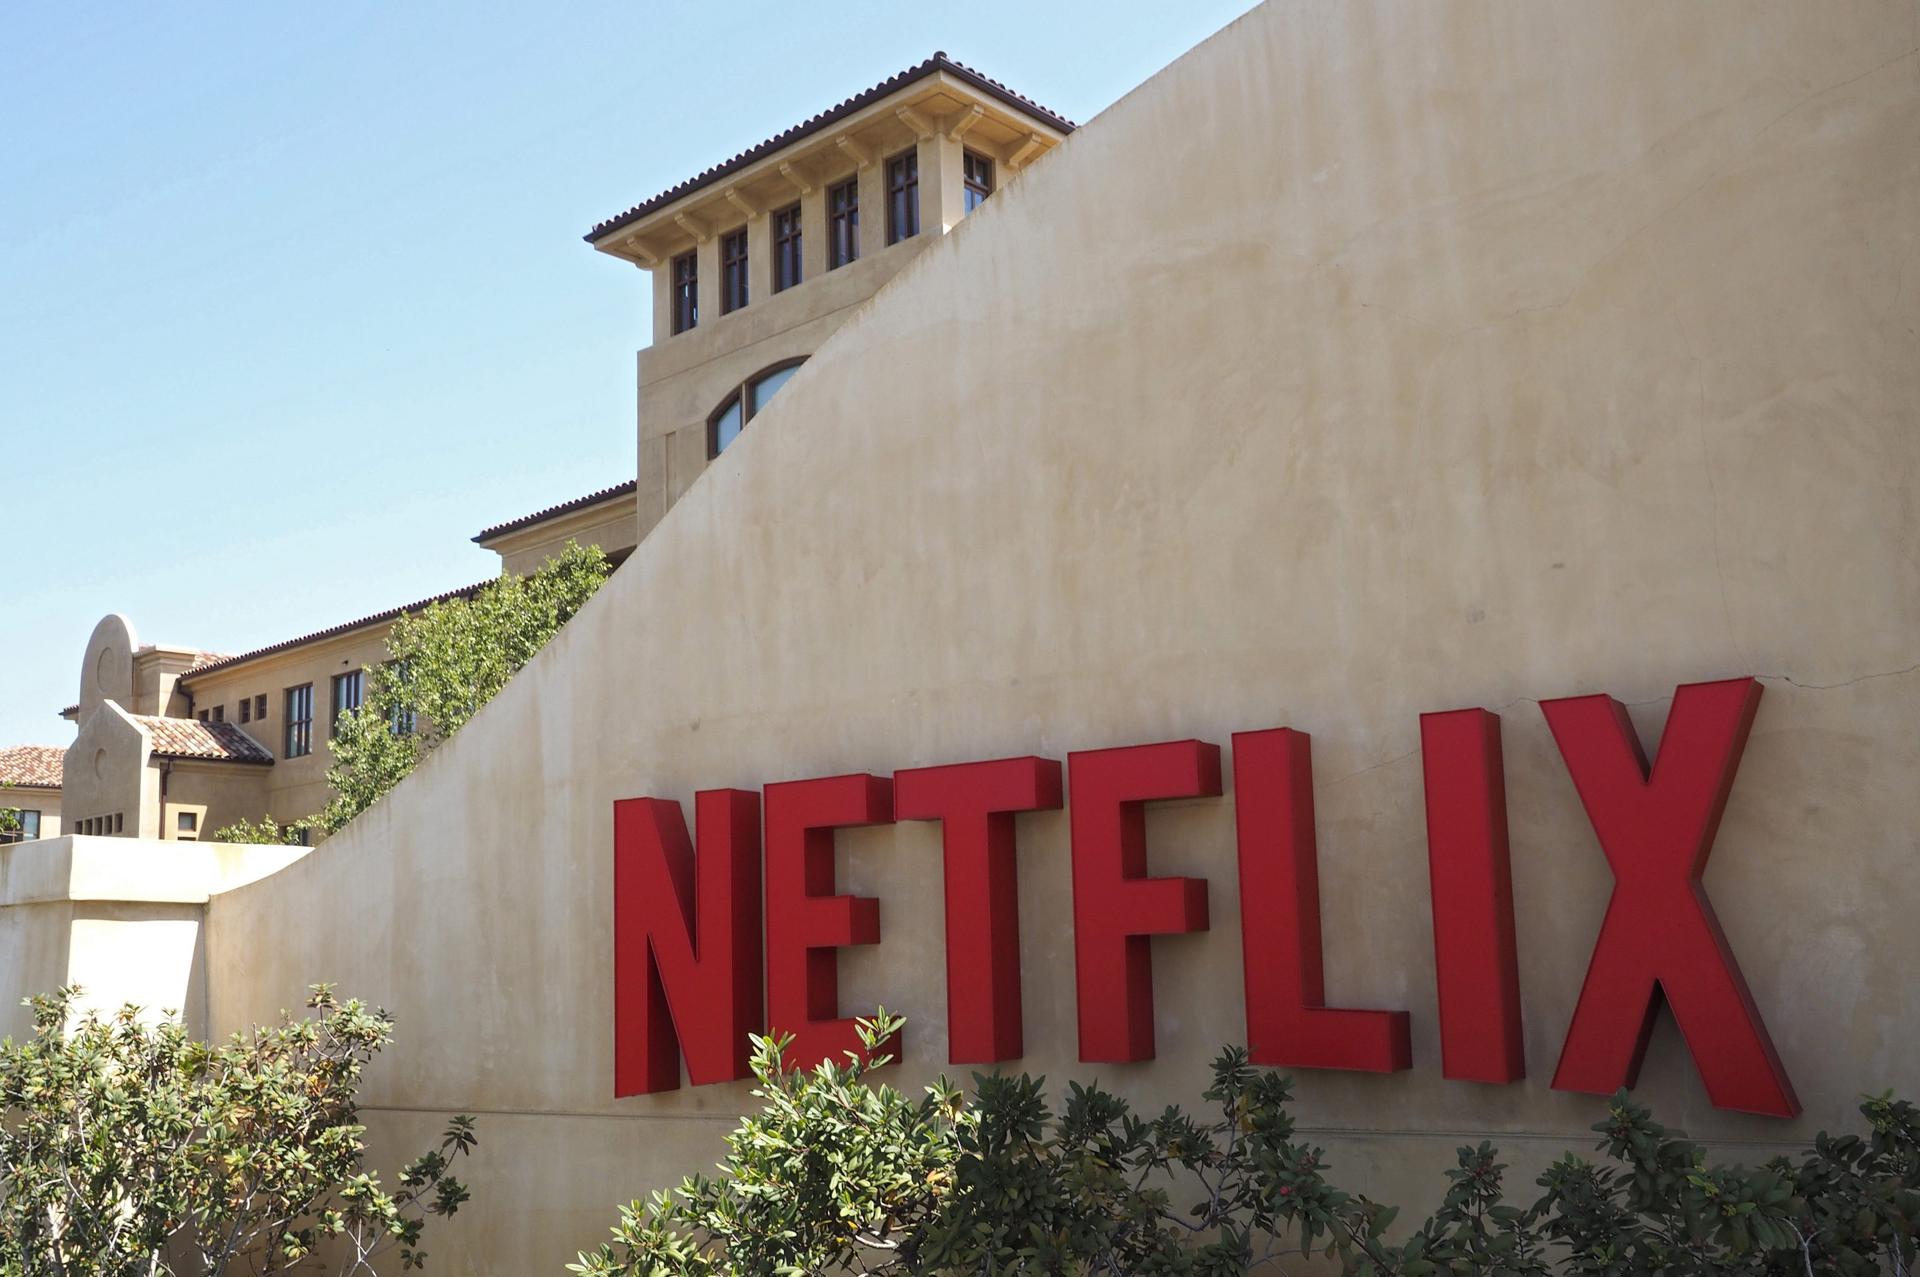 Netflix va perdiendo la guerra de las plataformas tras fracaso publicitario